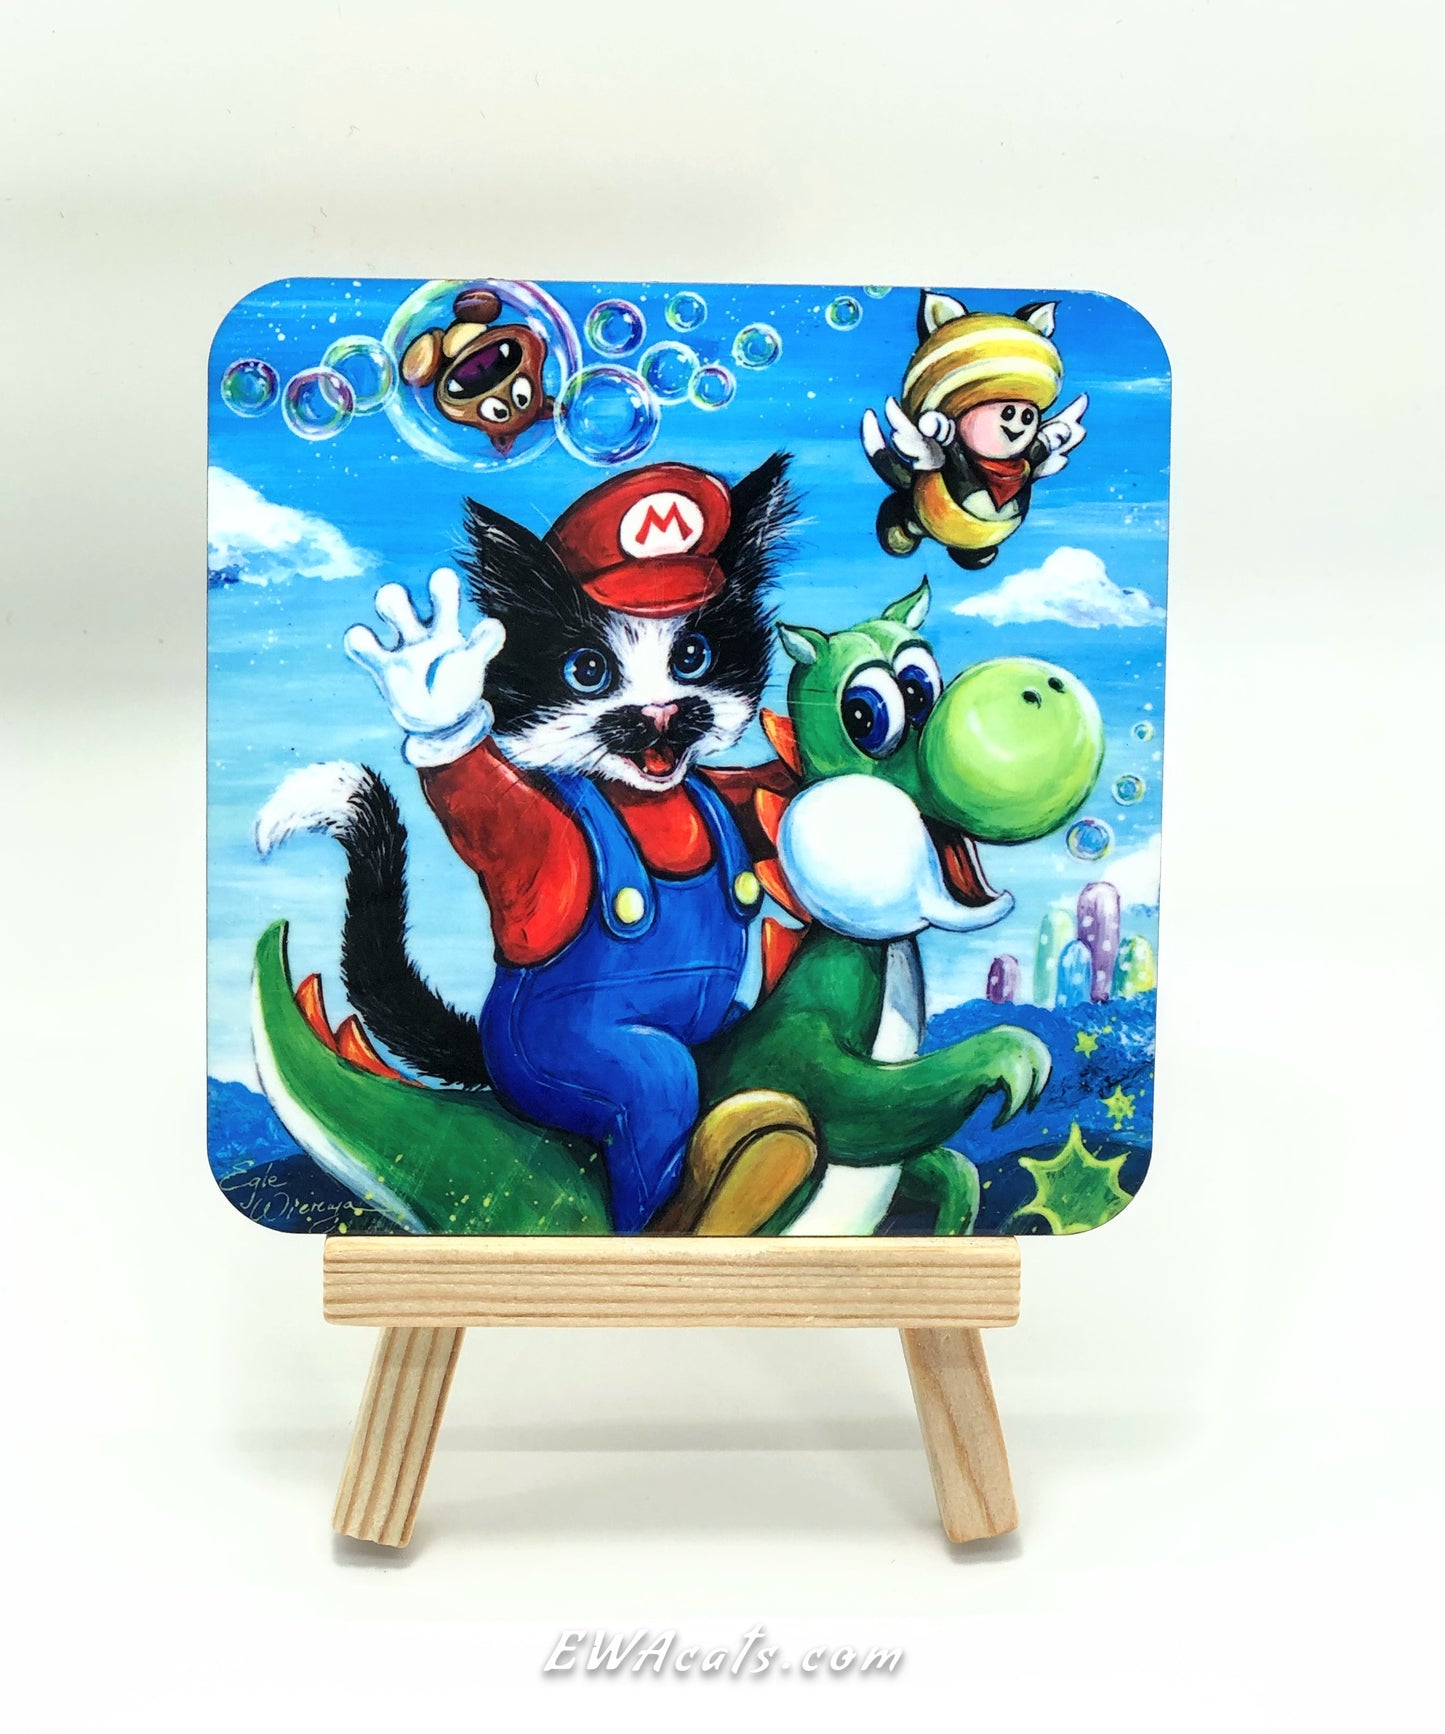 Coaster "Mario Kitty"